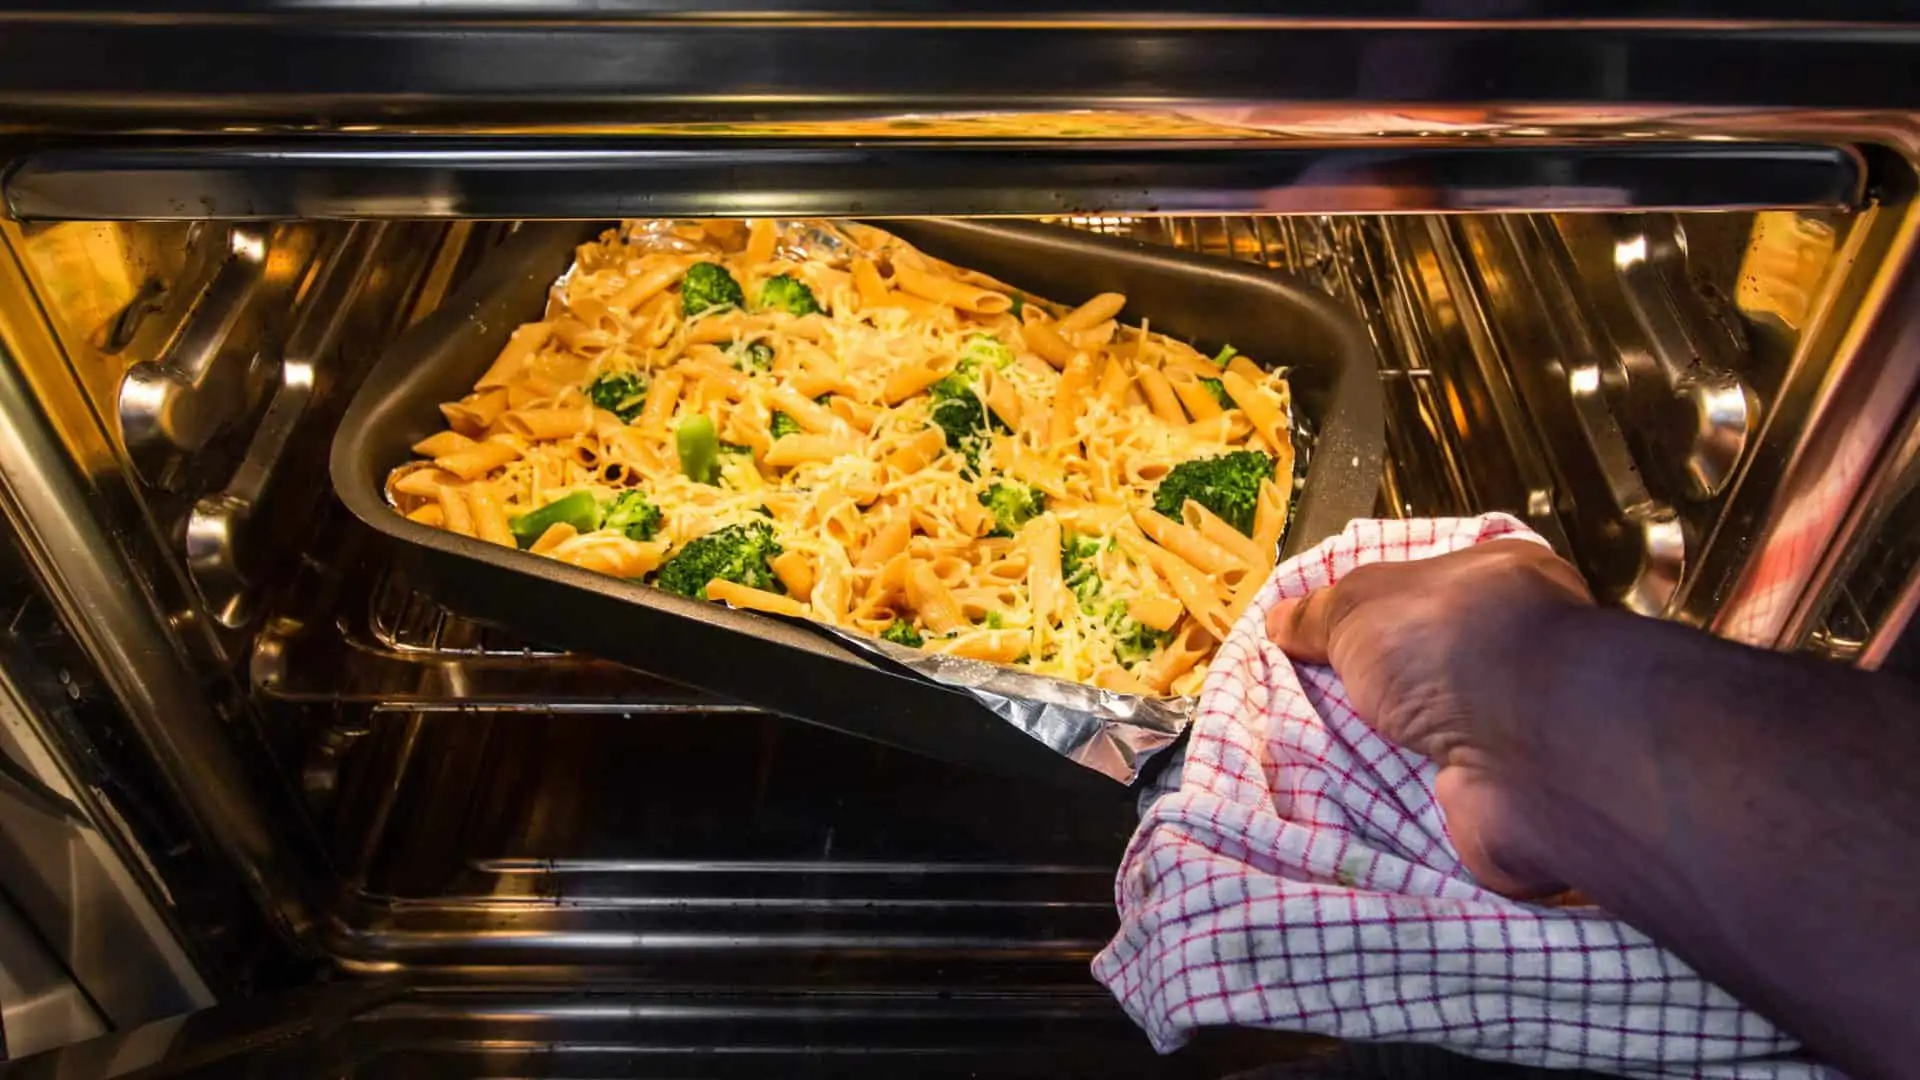 Persoon doet ovenschotel met pasta, kaas en broccoli in de oven.